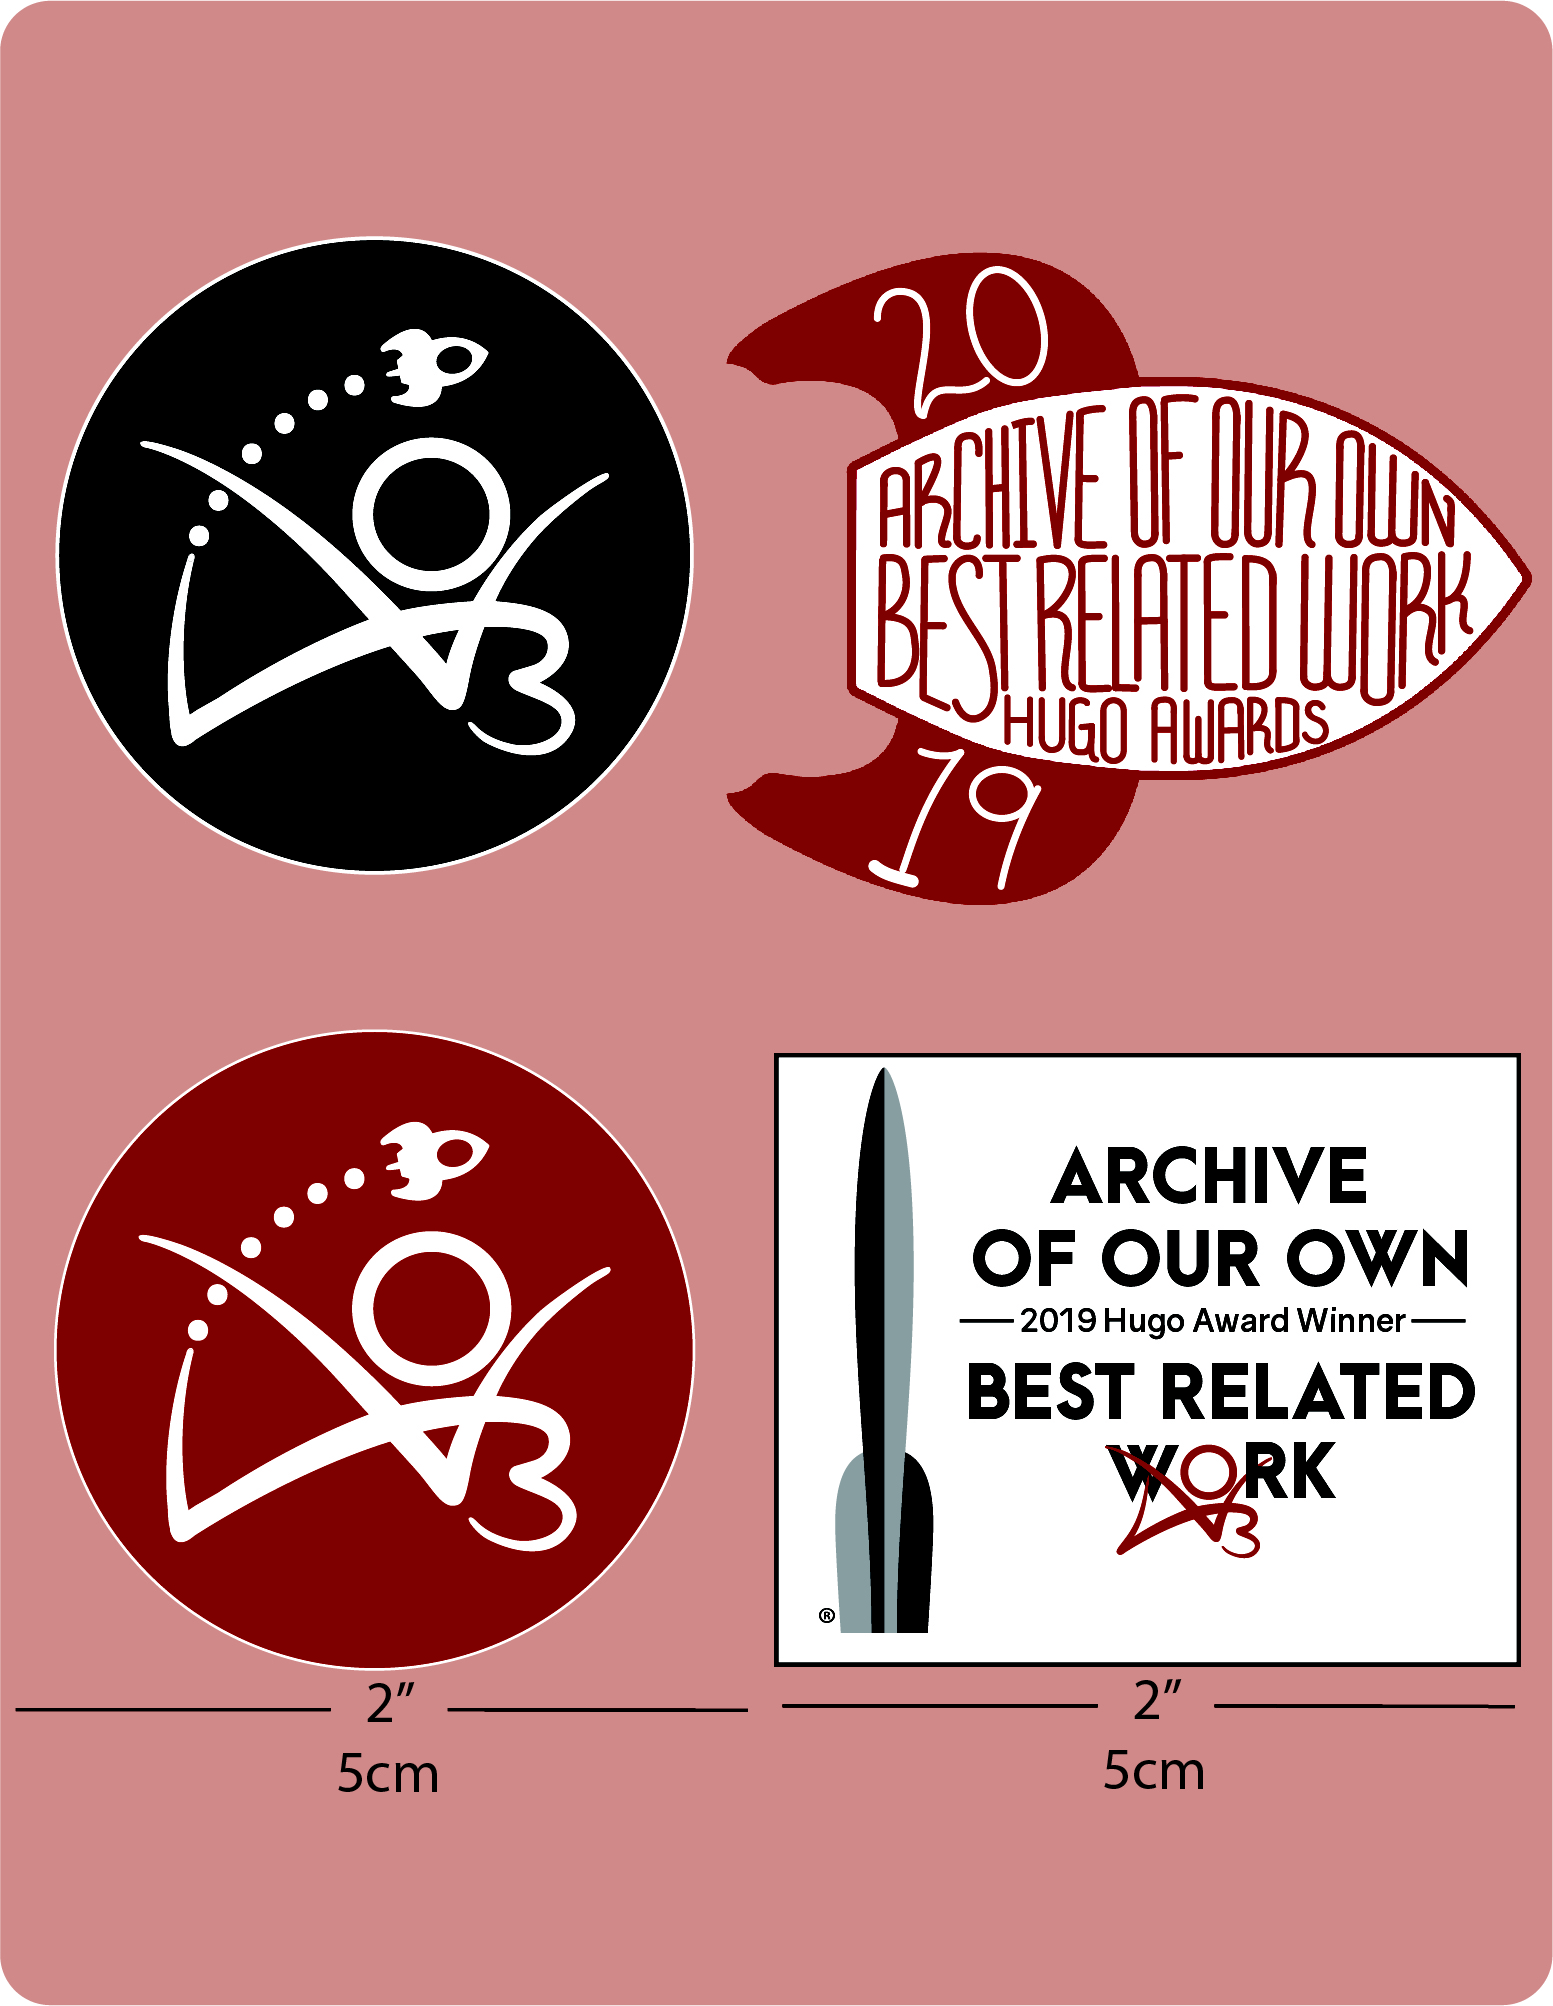 Hugo-Award Sticker Set (enthält vier Sticker, die je 5cm messen). Die ersten zwei sind rund, mit einer kleinen Rakete, die über dem AO3 Logo fliegt. (1) ist rot, (2) ist schwarz. (3) Ein Rechteck mit dem Hugo-Logo neben den Worten "Archive of Our Own - 2019 Hugo Award Winner - Best Related Work." (AO3, Ein Eigenes Archiv, Gewinner des Hugo Awards 2019 für "Best Related Work") und (4) eine stilisierte Rakete, auf der die handgeschriebenen Worte  "Archive of Our Own, Best Related Work, Hugo Awards" (AO3, Ein Eigenes Archiv, "Best Related Work" Hugo Awards) zu sehen sind und das Jahr "2019" auf den Raketenfinnen.